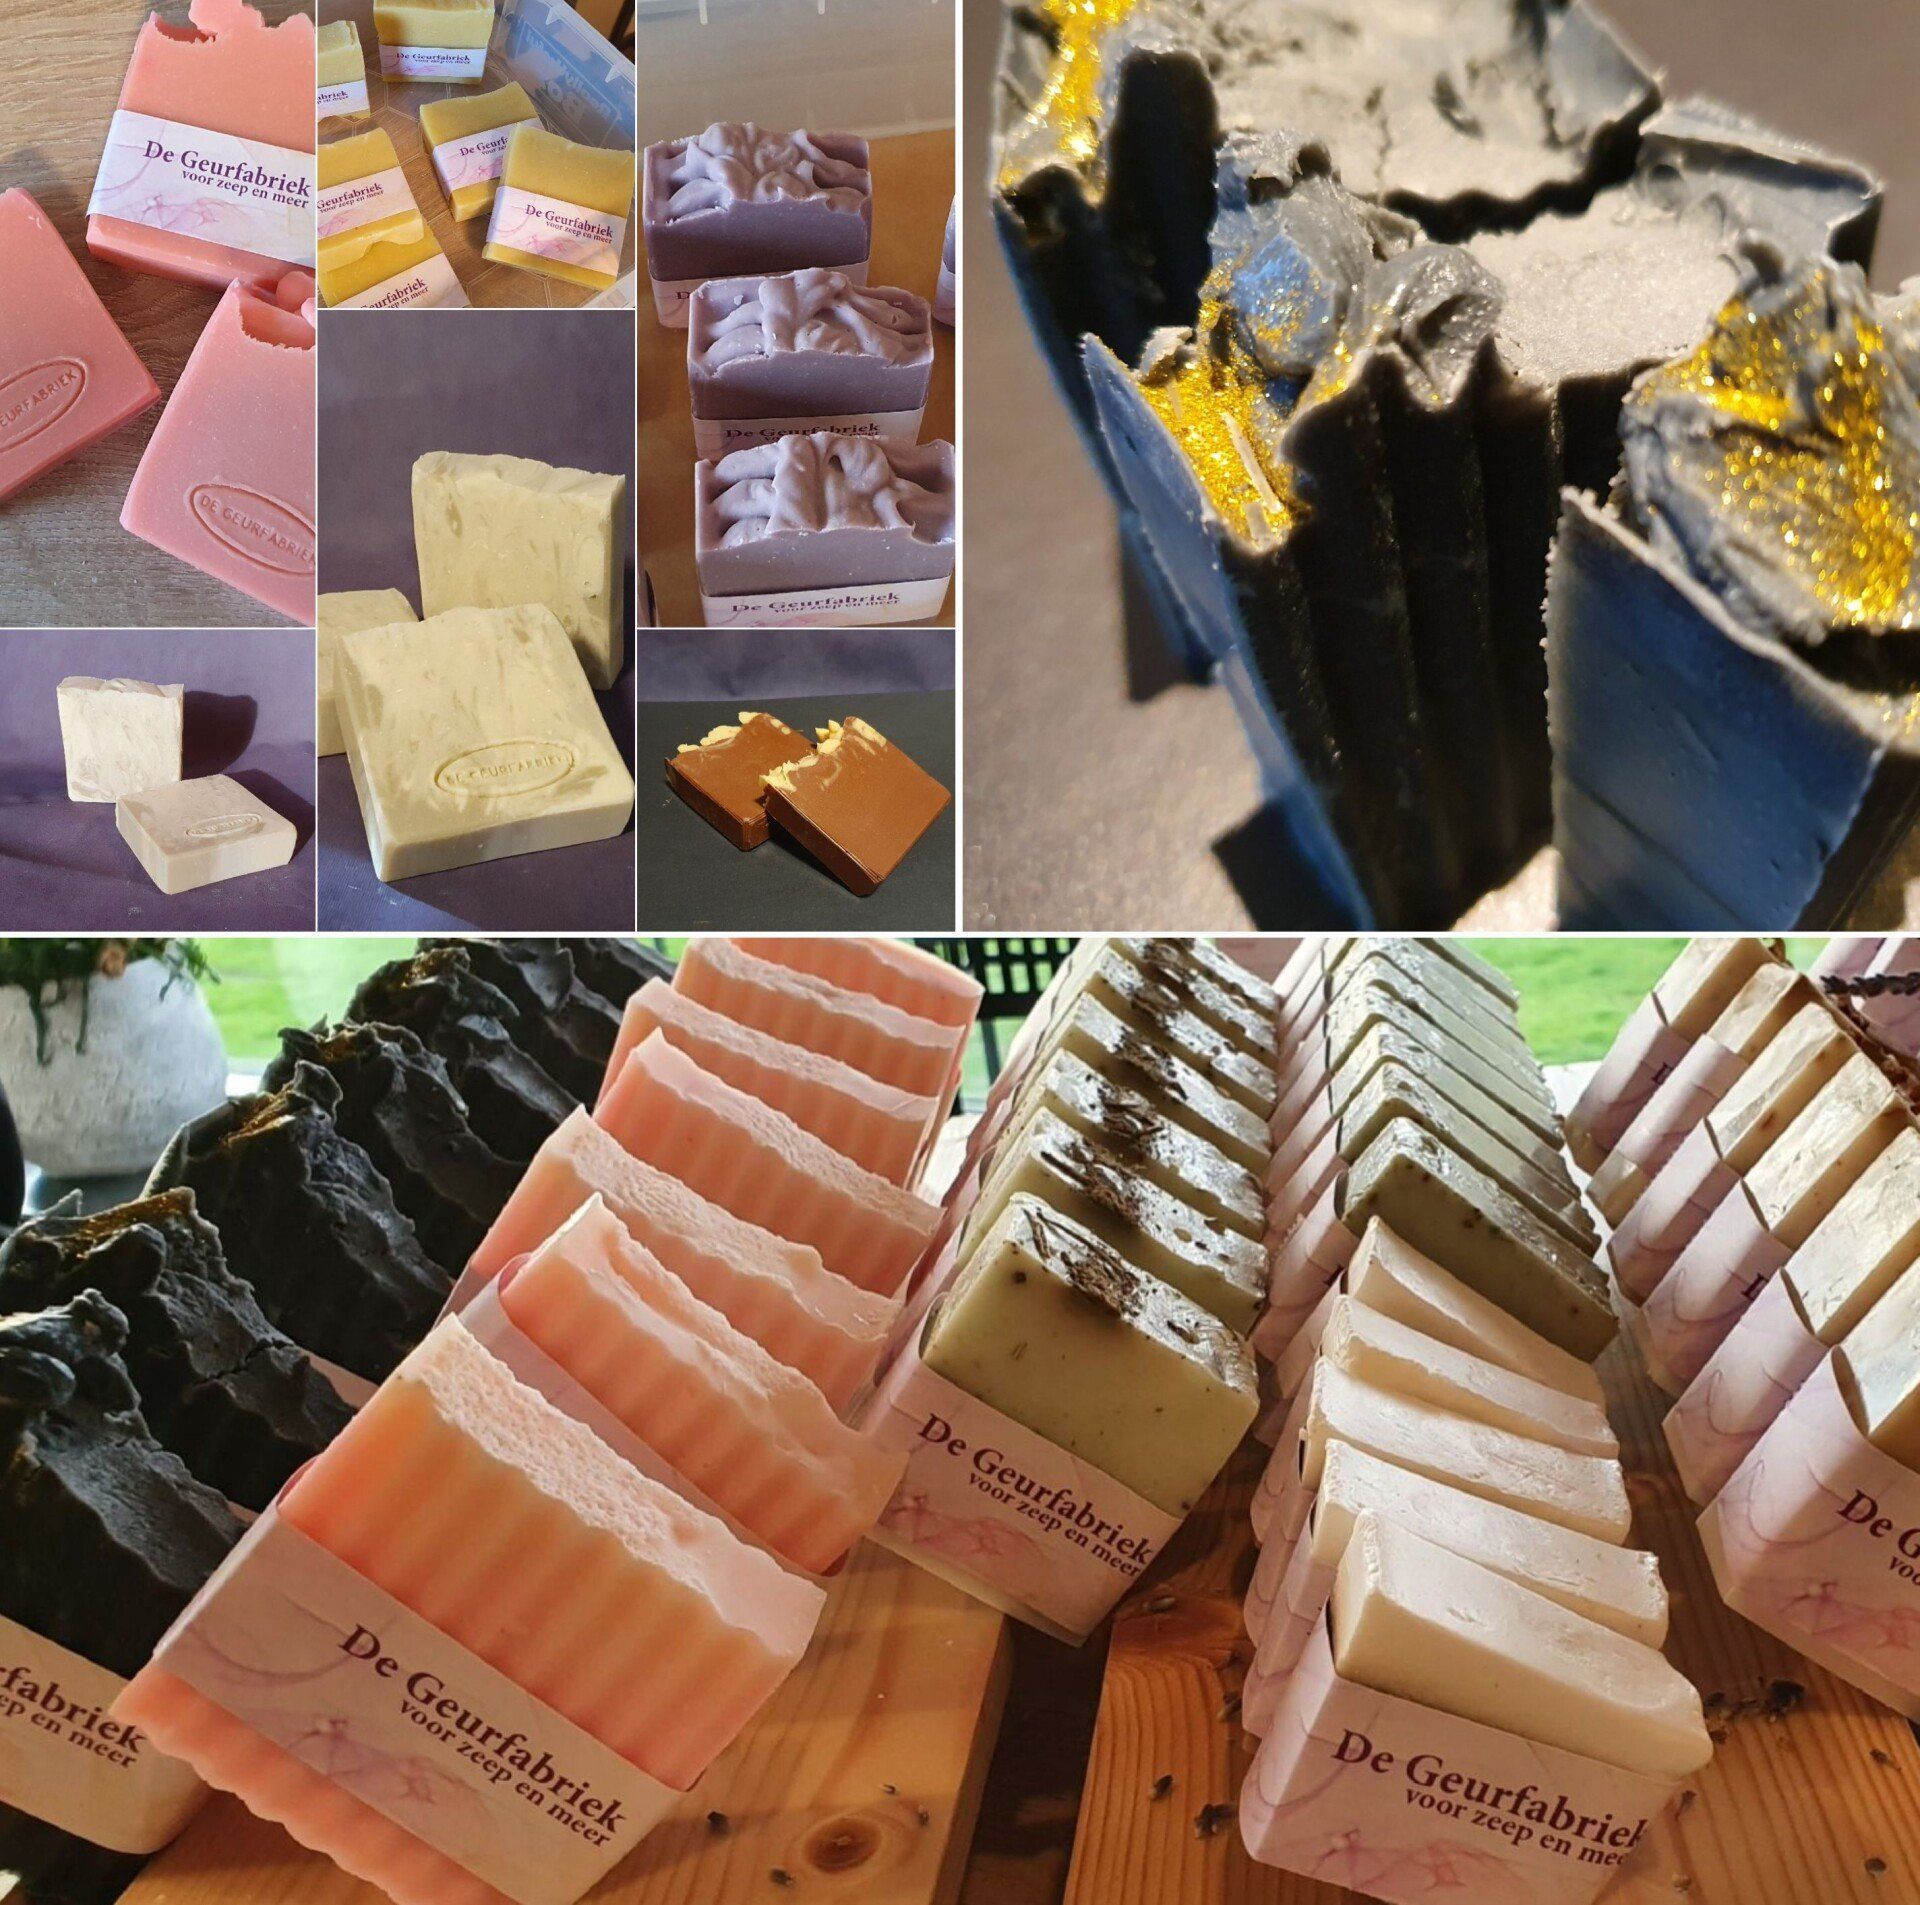 Een collage van foto's van verschillende soorten zeep, waaronder één met de tekst de geurfabriek